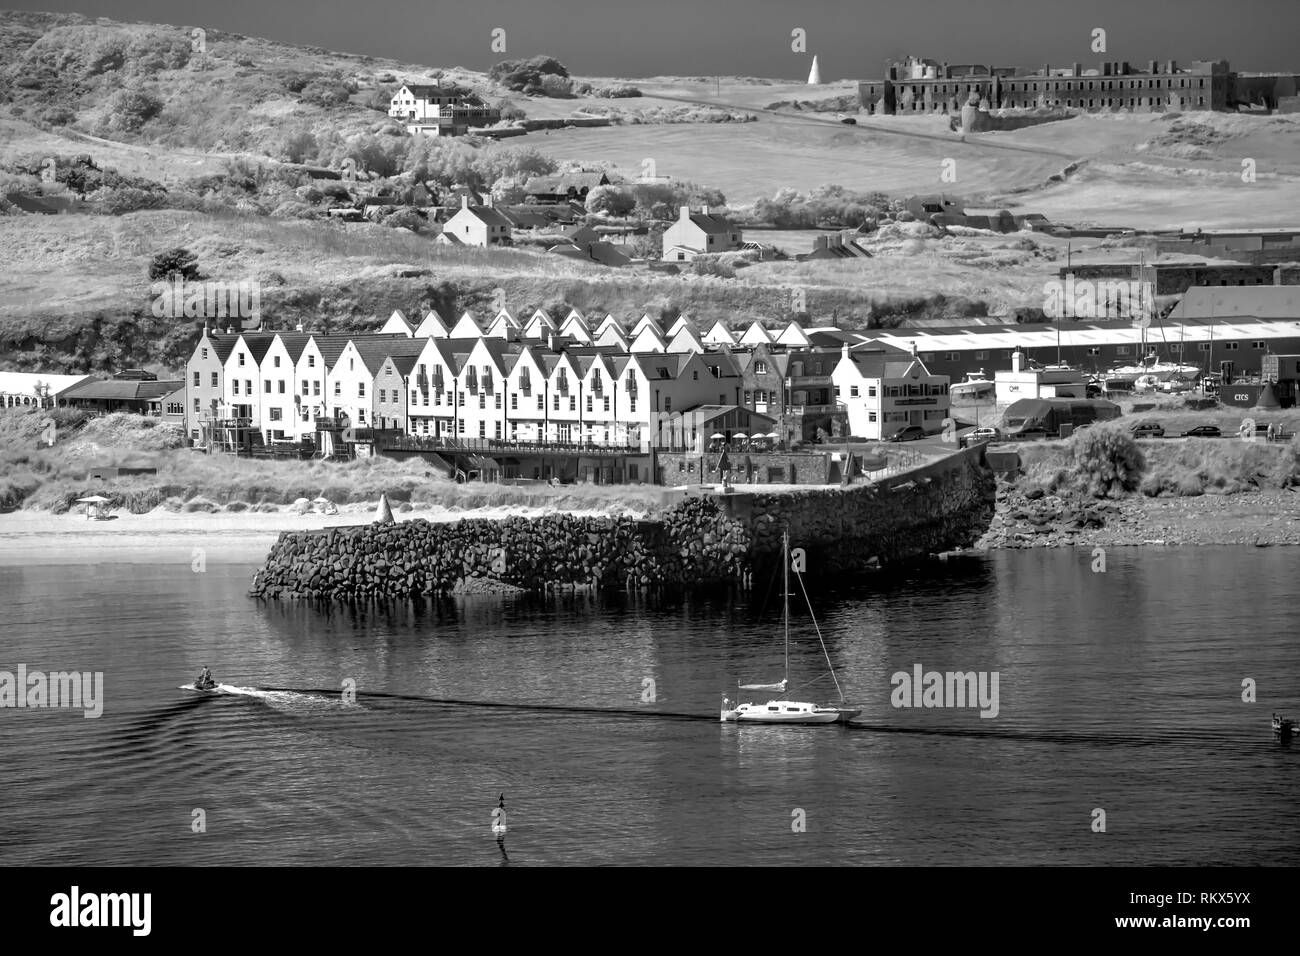 Une image monochrome infrarouge de la ligne de Braye Harbour, sur Alderney, Channel Islands. Banque D'Images